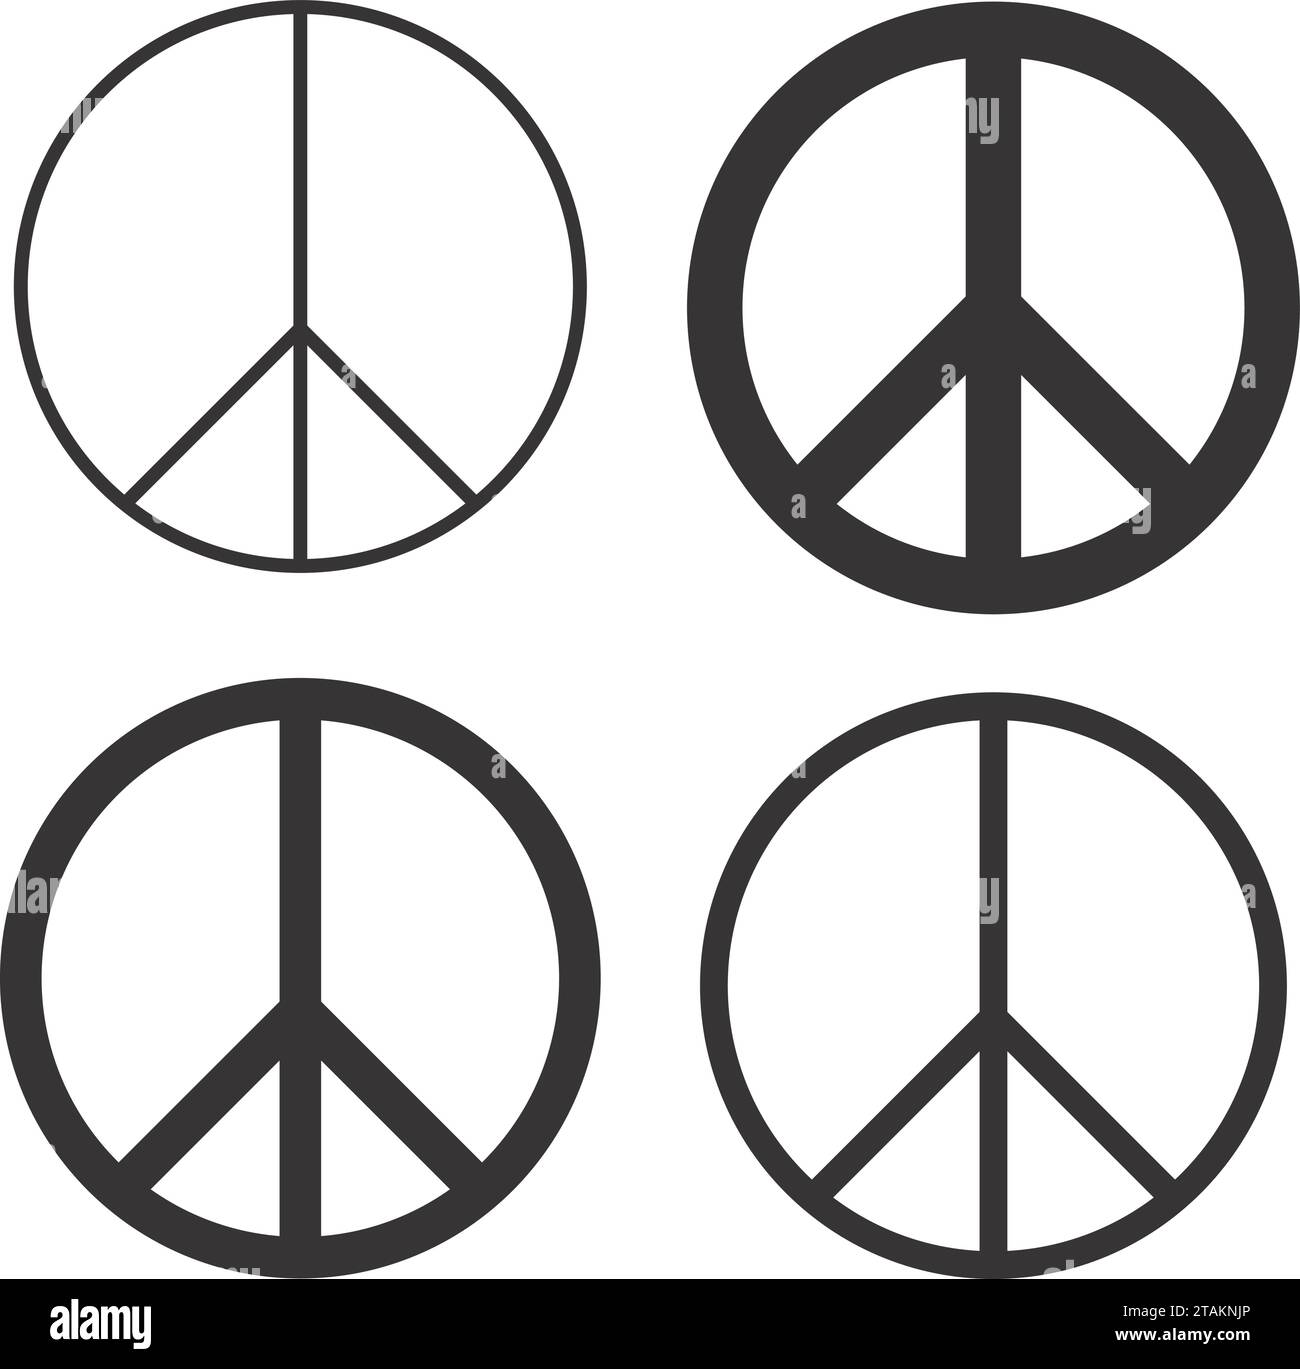 Vektorillustration Friedenssymbol. Ein Symbol des internationalen Friedens in Schwarz-weiß-Kreisen für Antikriegs oder nukleare Abrüstung. amerikanischer Vektor. Stock Vektor